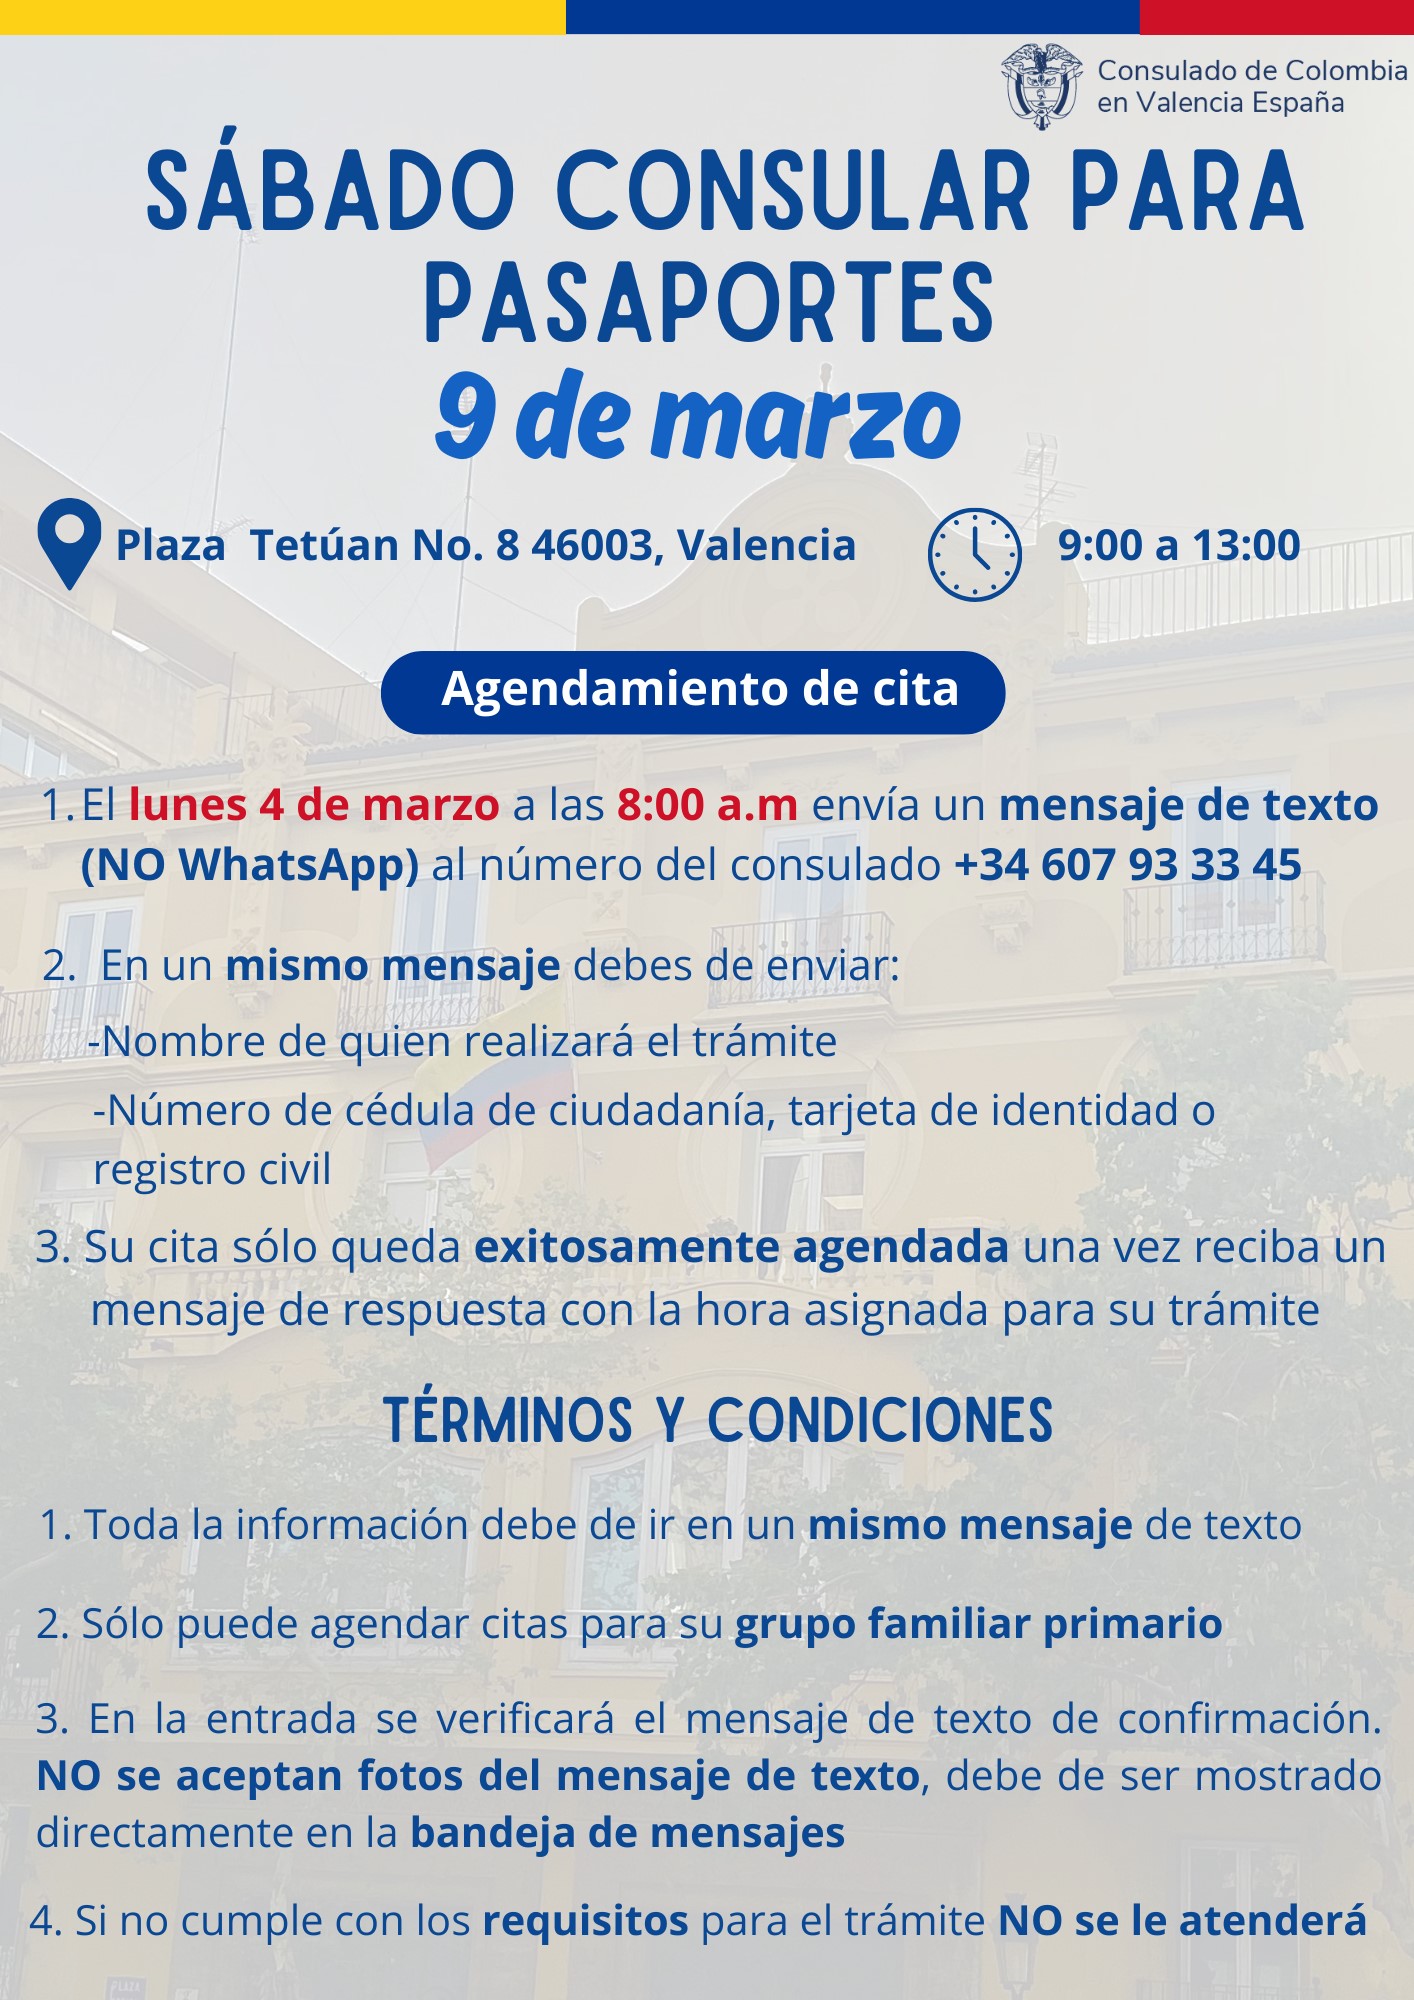 Sabado Consular 4 de marzo en Valencia